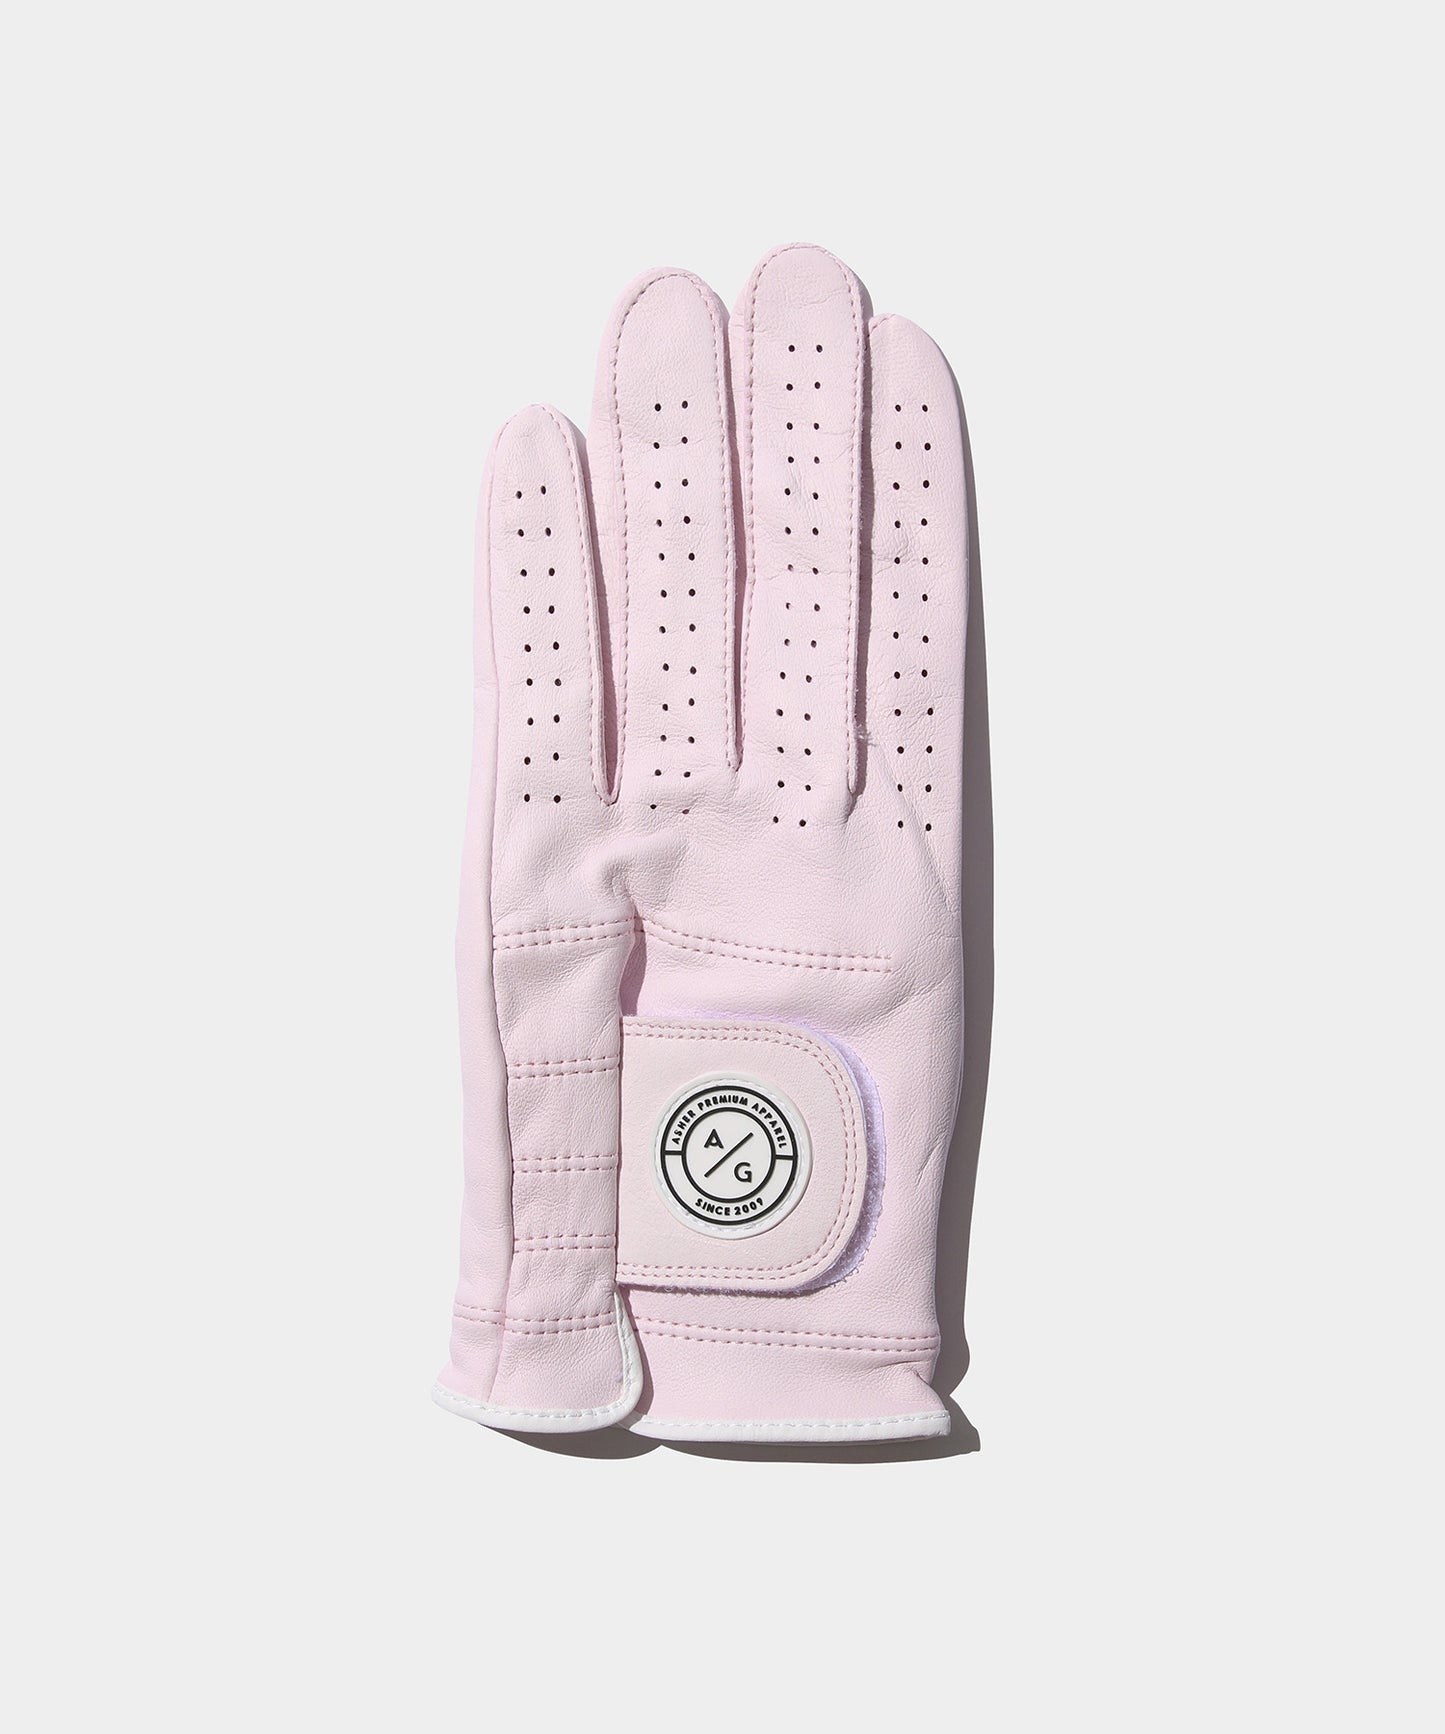 Asher Premium Glove PINK